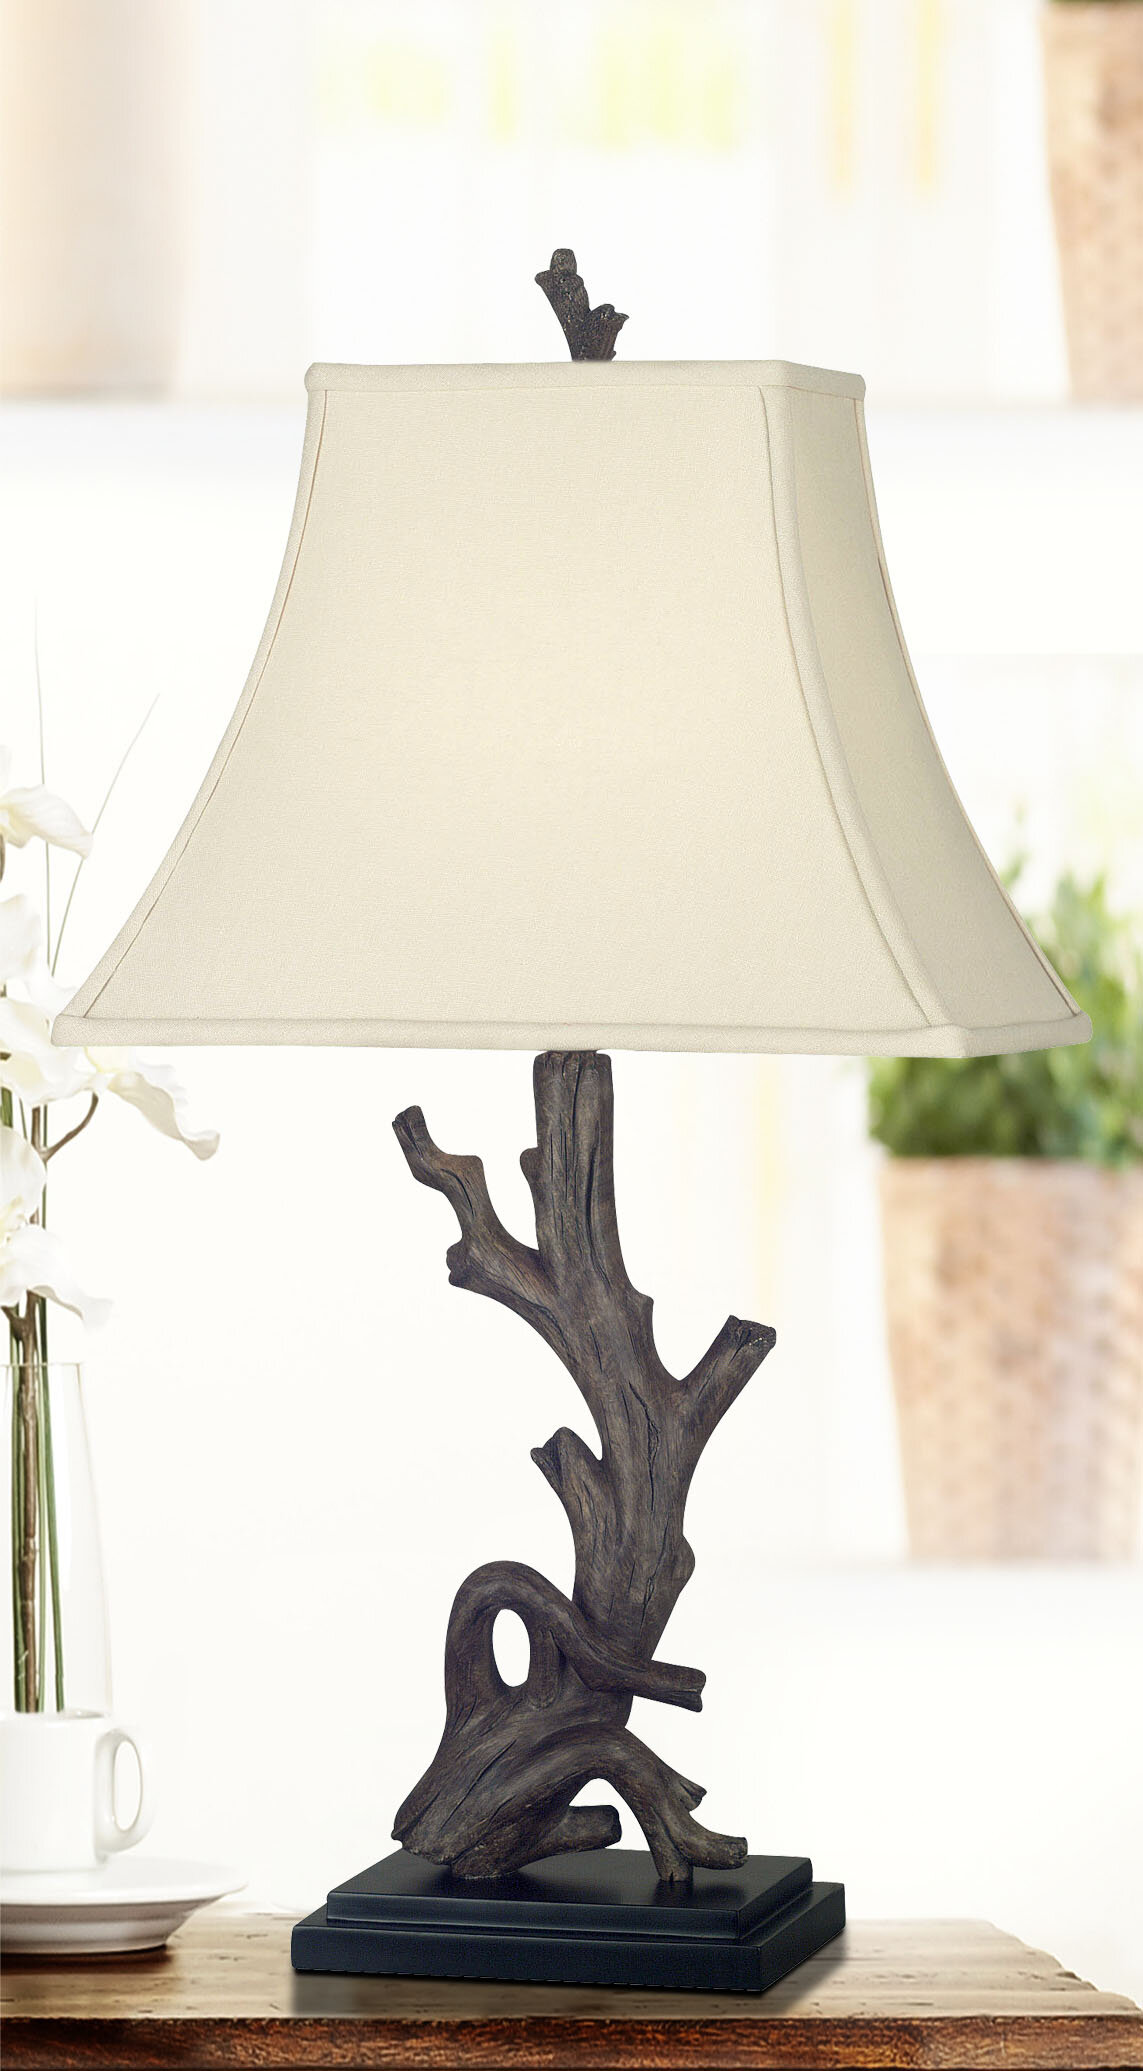 Soccer Style Accent Lamp 15/" Tall White Bell Shade Light Polyresin Desk Lighting